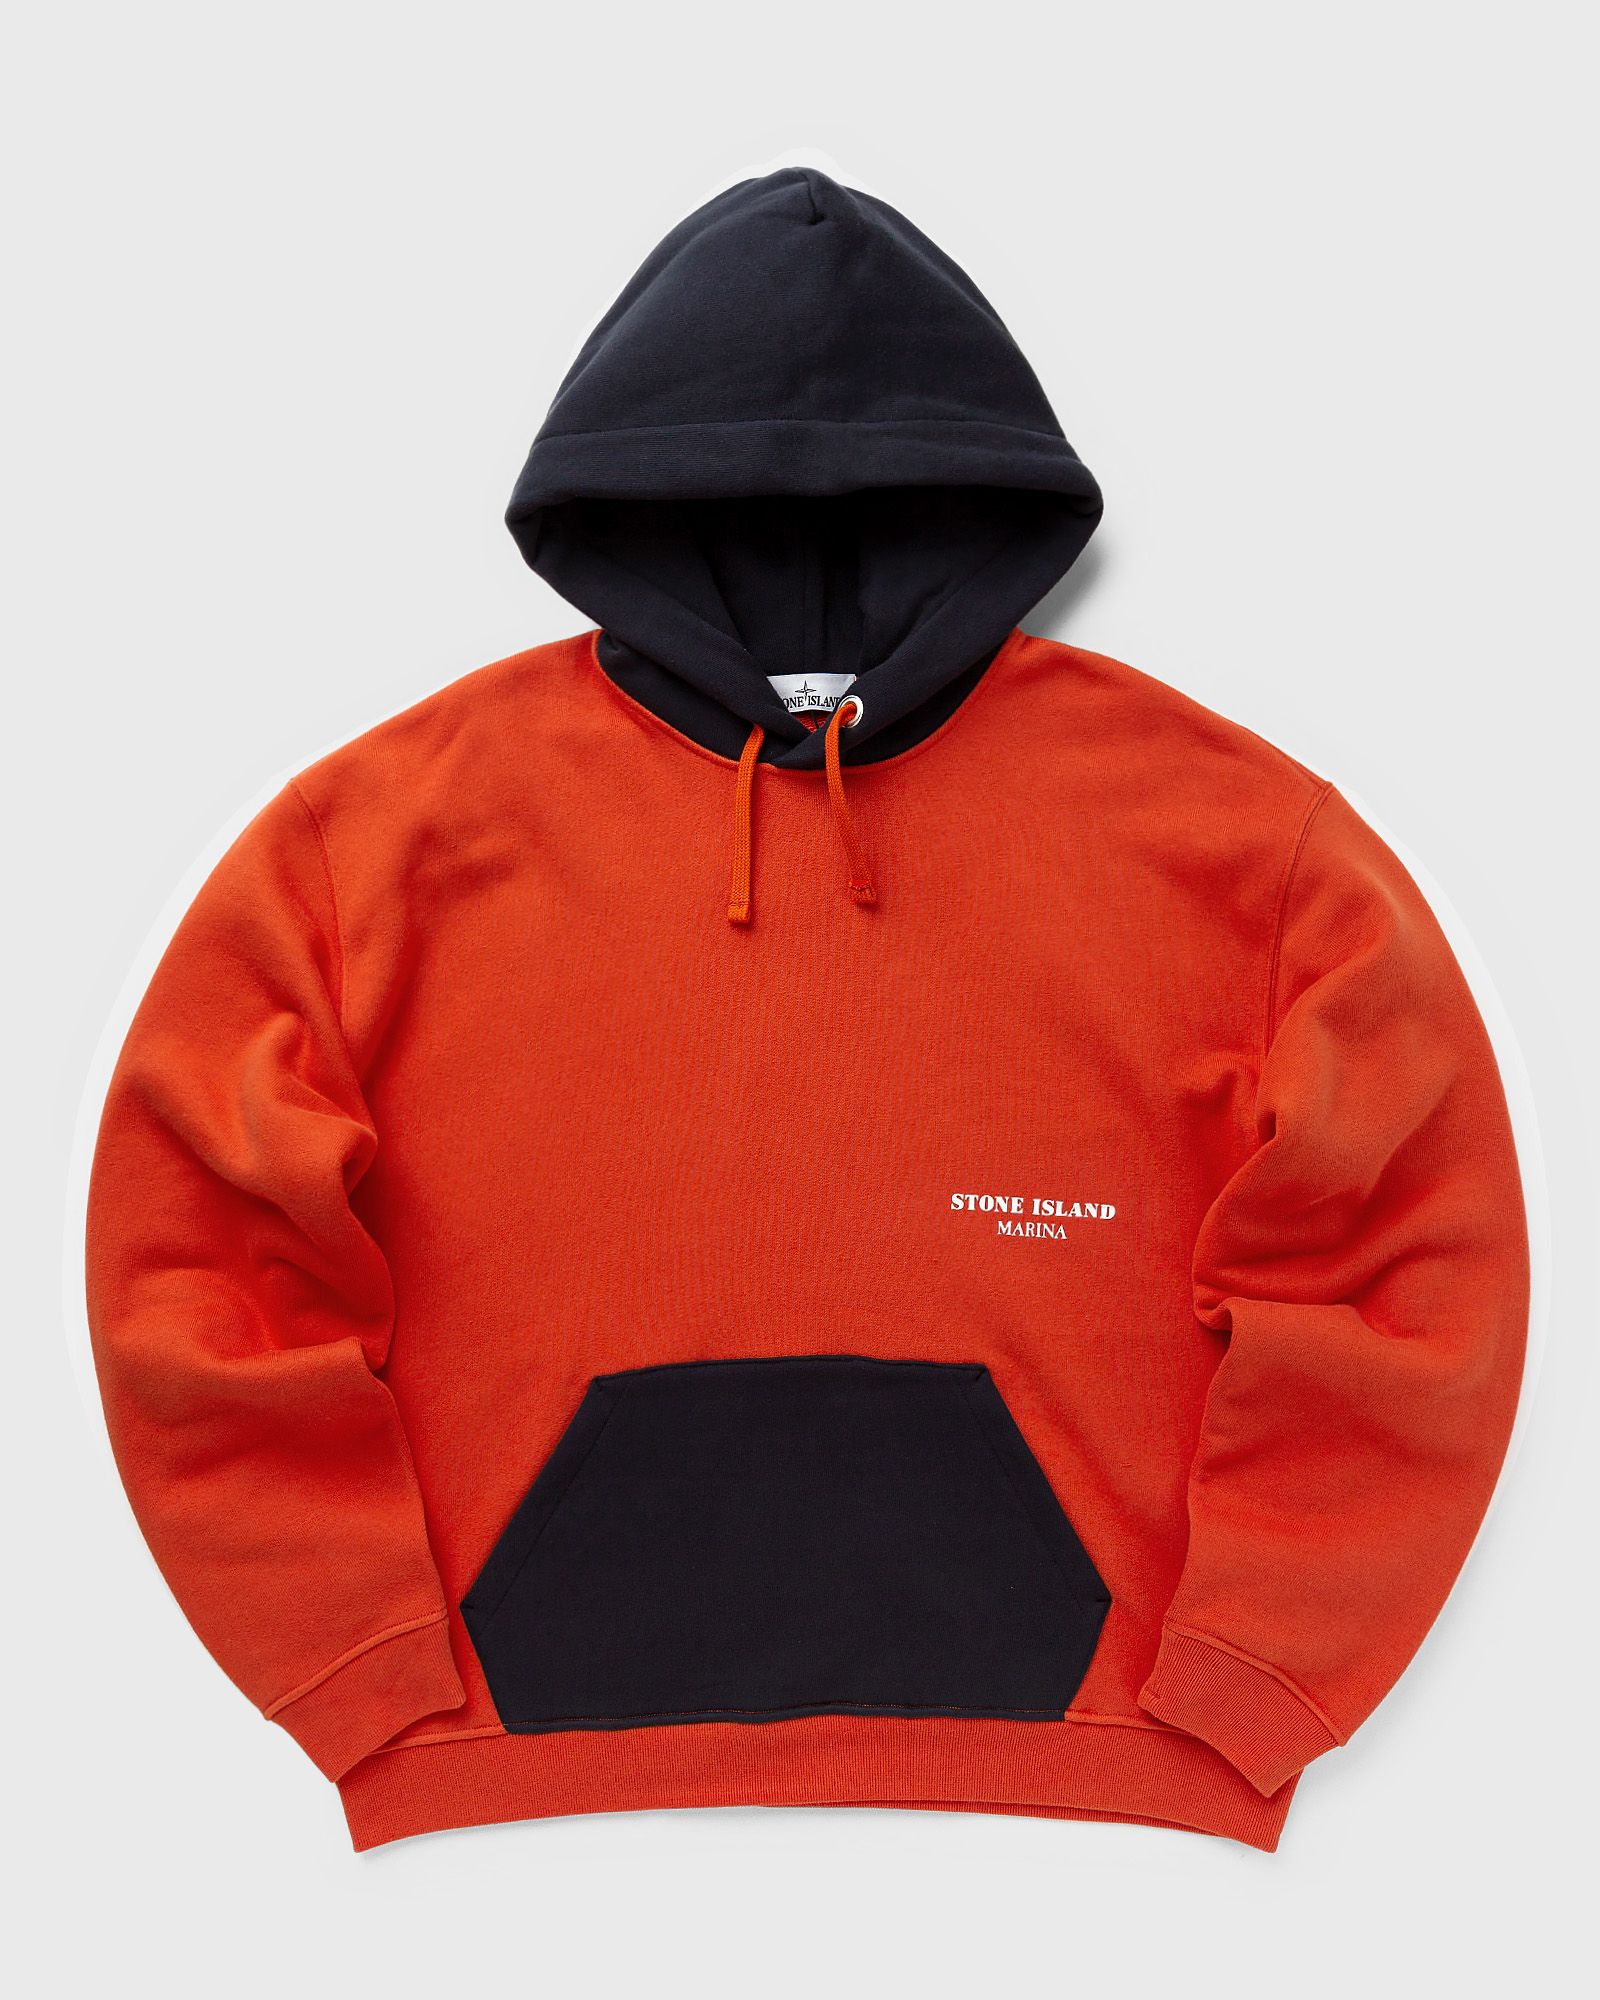 Stone Island - sweat-shirt cotton fleece_  marina men hoodies black|orange in größe:m